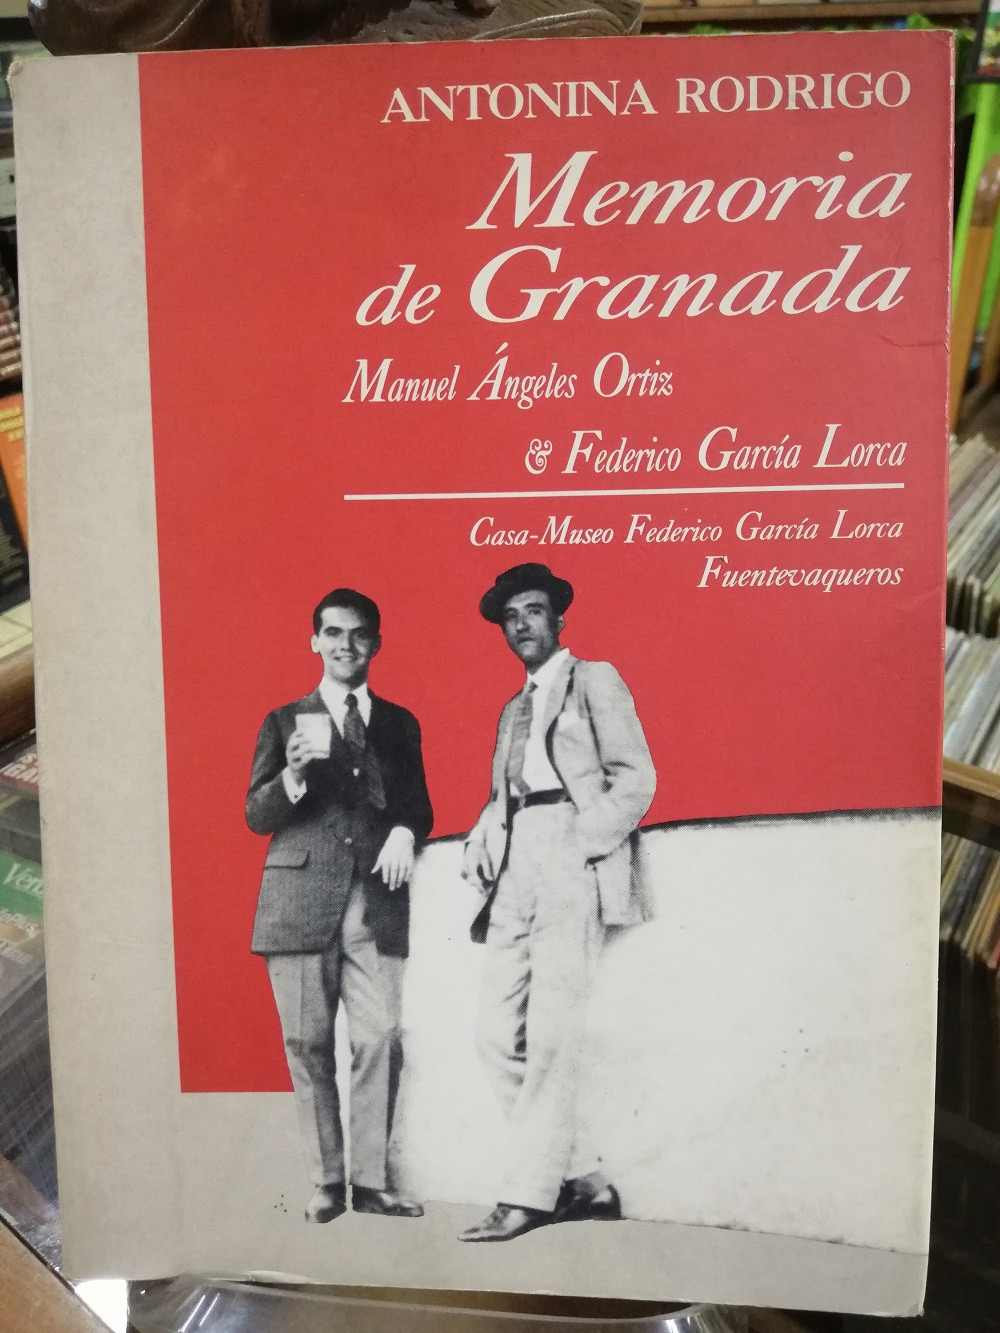 Imagen MEMORIA DE GRANADA, MANUEL ÁNGELES ORTIZ & FEDERICO GARCÍA LORCA - ANTONINA RODRIGO